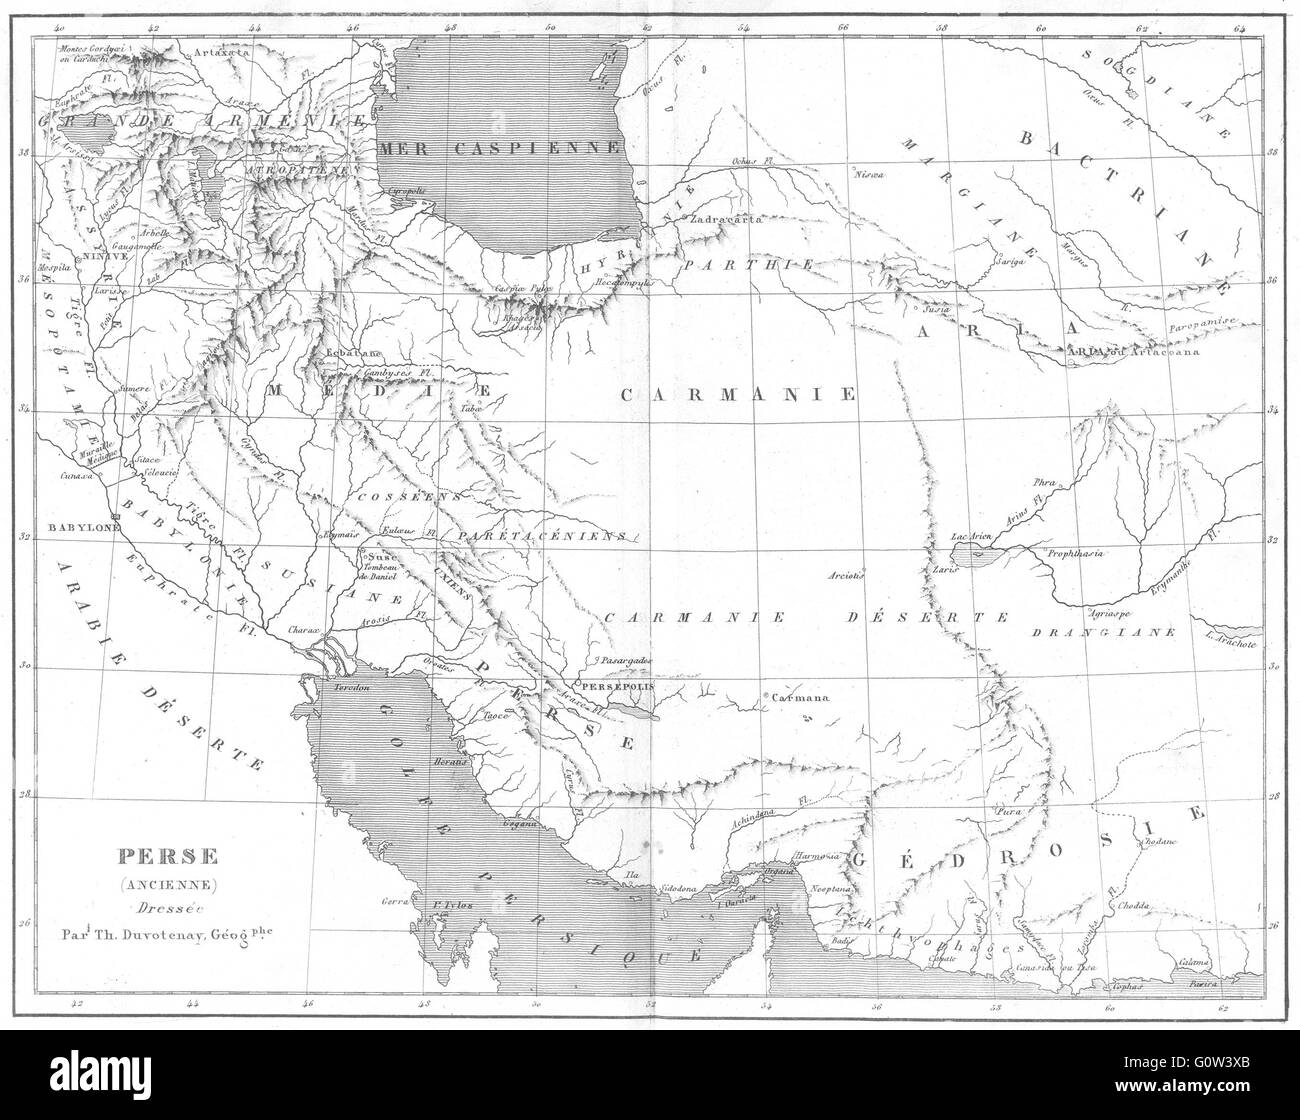 IRAN: Perse(Persia) (Ancienne) Dressee alten persischen, 1879 Antike Landkarte Stockfoto